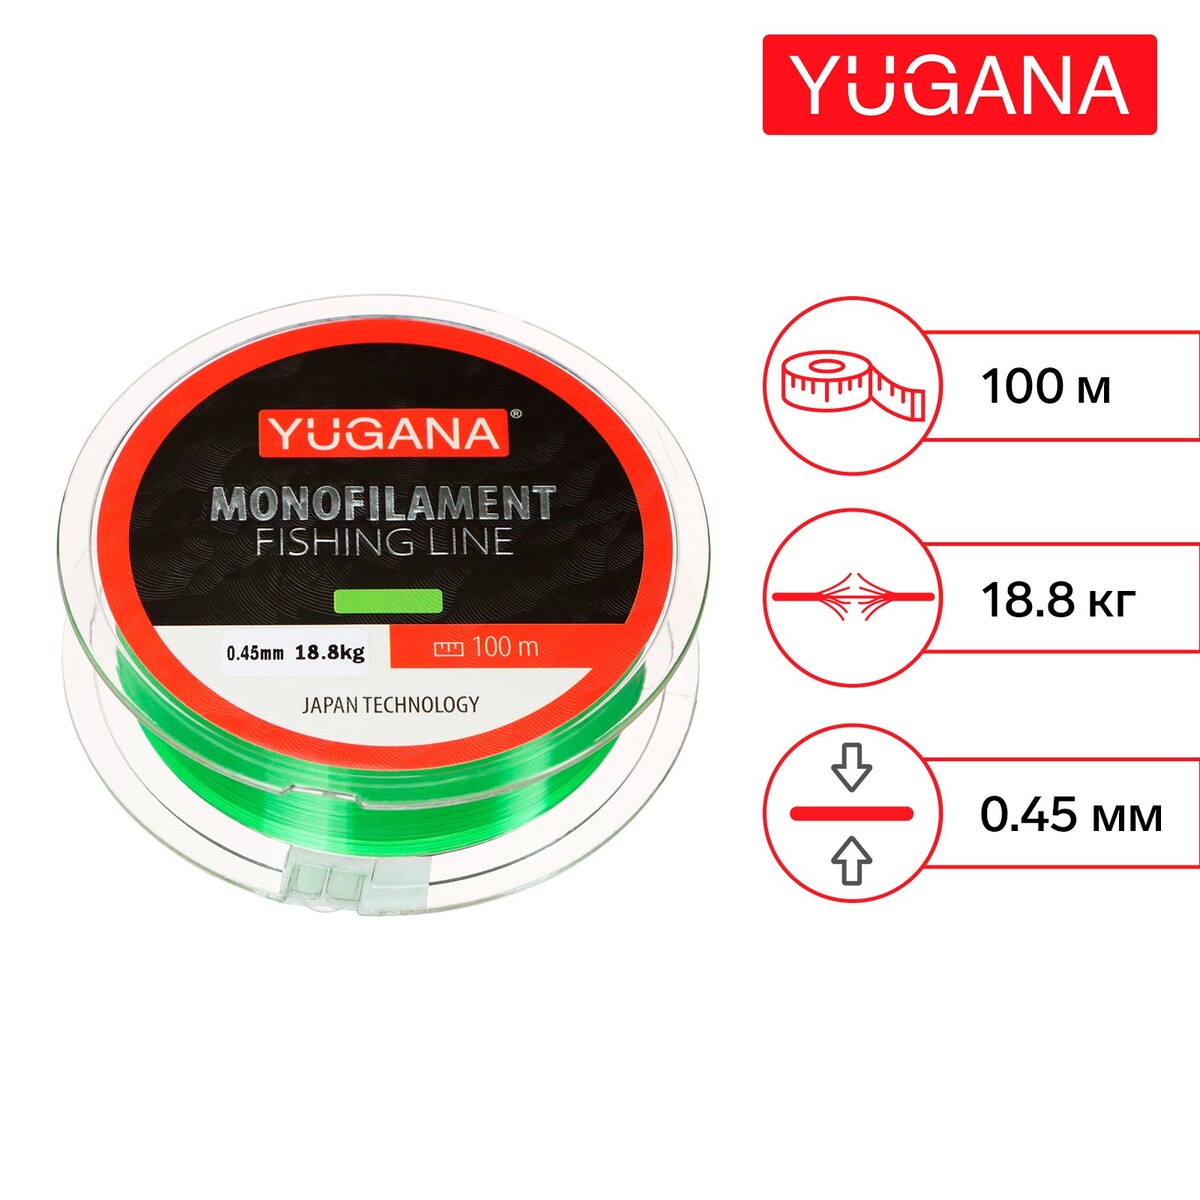 Леска монофильная yugana, диаметр 0.45 мм, тест 18.8 кг, 100 м, зеленая